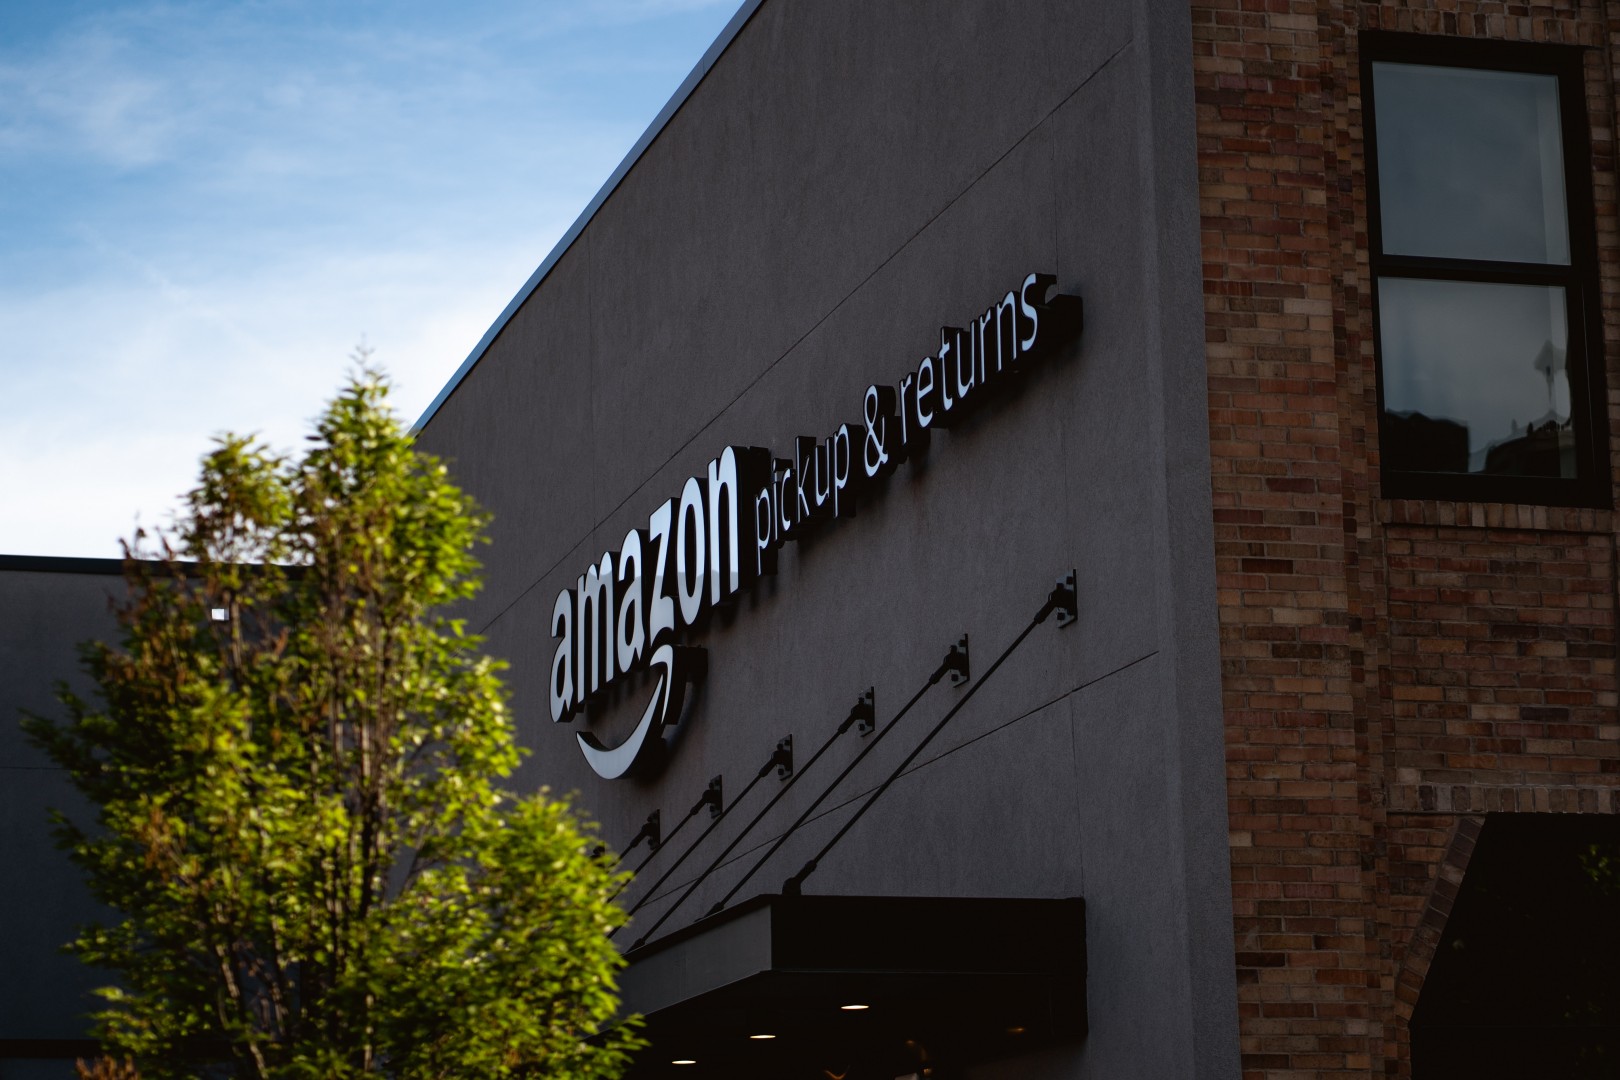 Komisja Europejska wszczęła priorytetowe dochodzenie sprawdzające, czy amerykańska korporacja Amazon prowadzi działania naruszające ogólnie przyjęte zasady konkurencji w Europie.